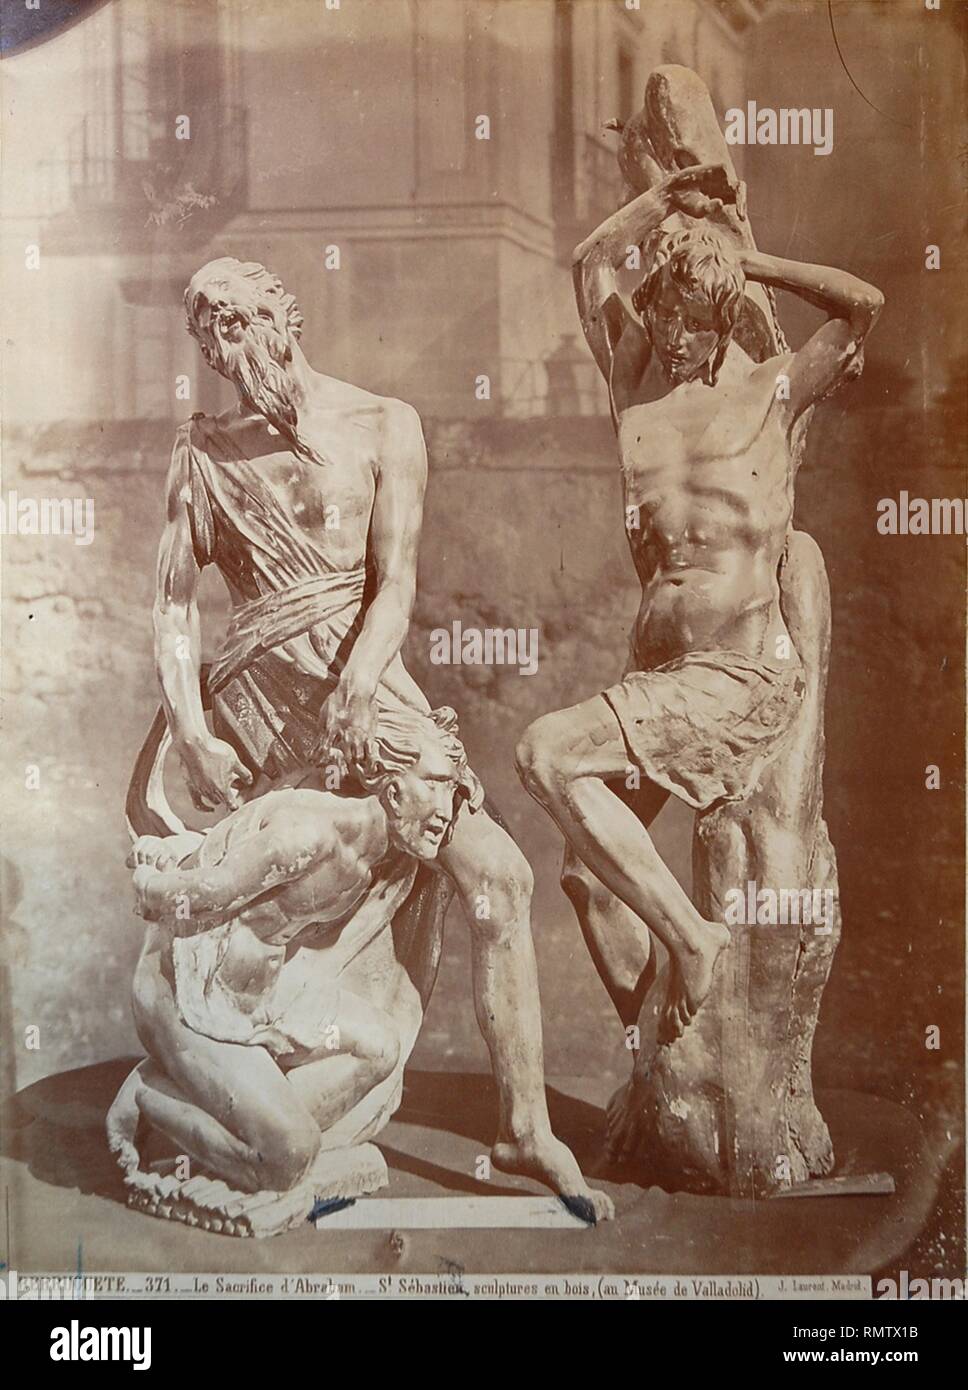 Berruguete. El sacrificio de Abraham y San Sebastián, esculturas en madera (Museo de Valladolid). Stock Photo